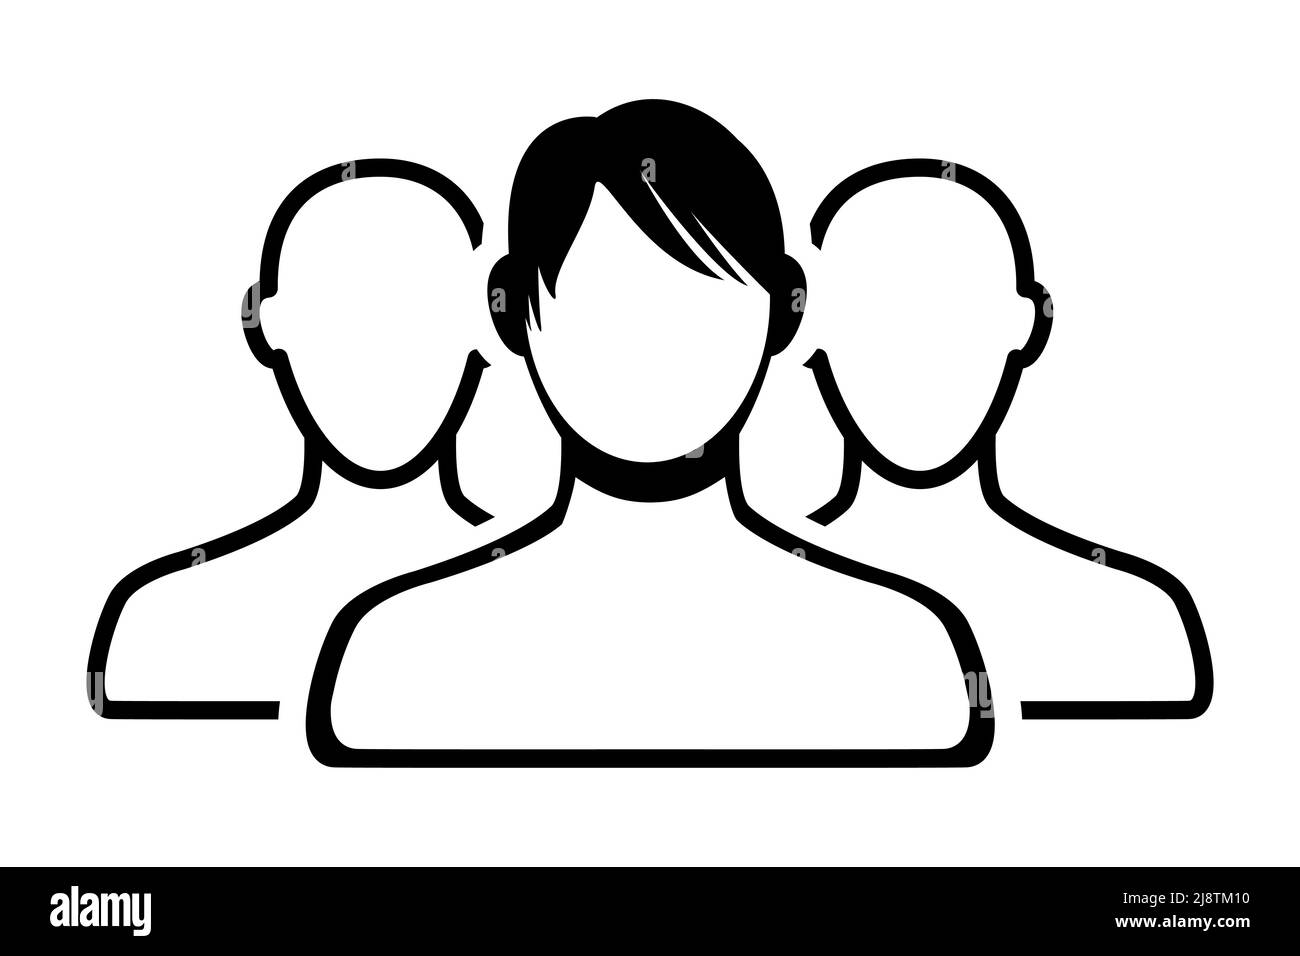 Personen-Symbol, Gruppen-Symbol, Team-Symbol isoliert auf weißem Hintergrund. vektor-Illustration Stock Vektor